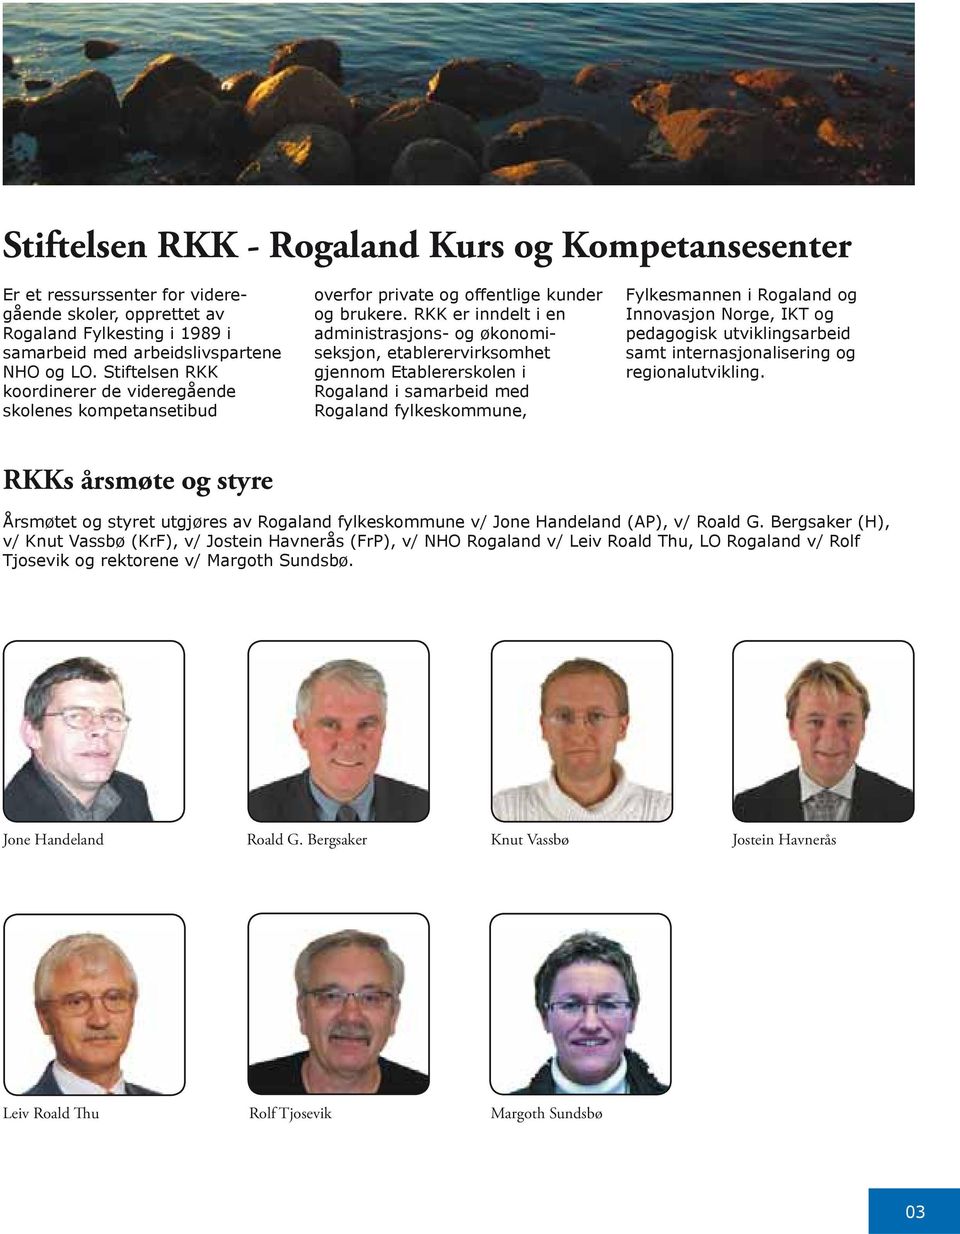 RKK er inndelt i en administrasjons- og økonomiseksjon, etablerervirksomhet gjennom Etablererskolen i Rogaland i samarbeid med Rogaland fylkeskommune, Fylkesmannen i Rogaland og Innovasjon Norge, IKT